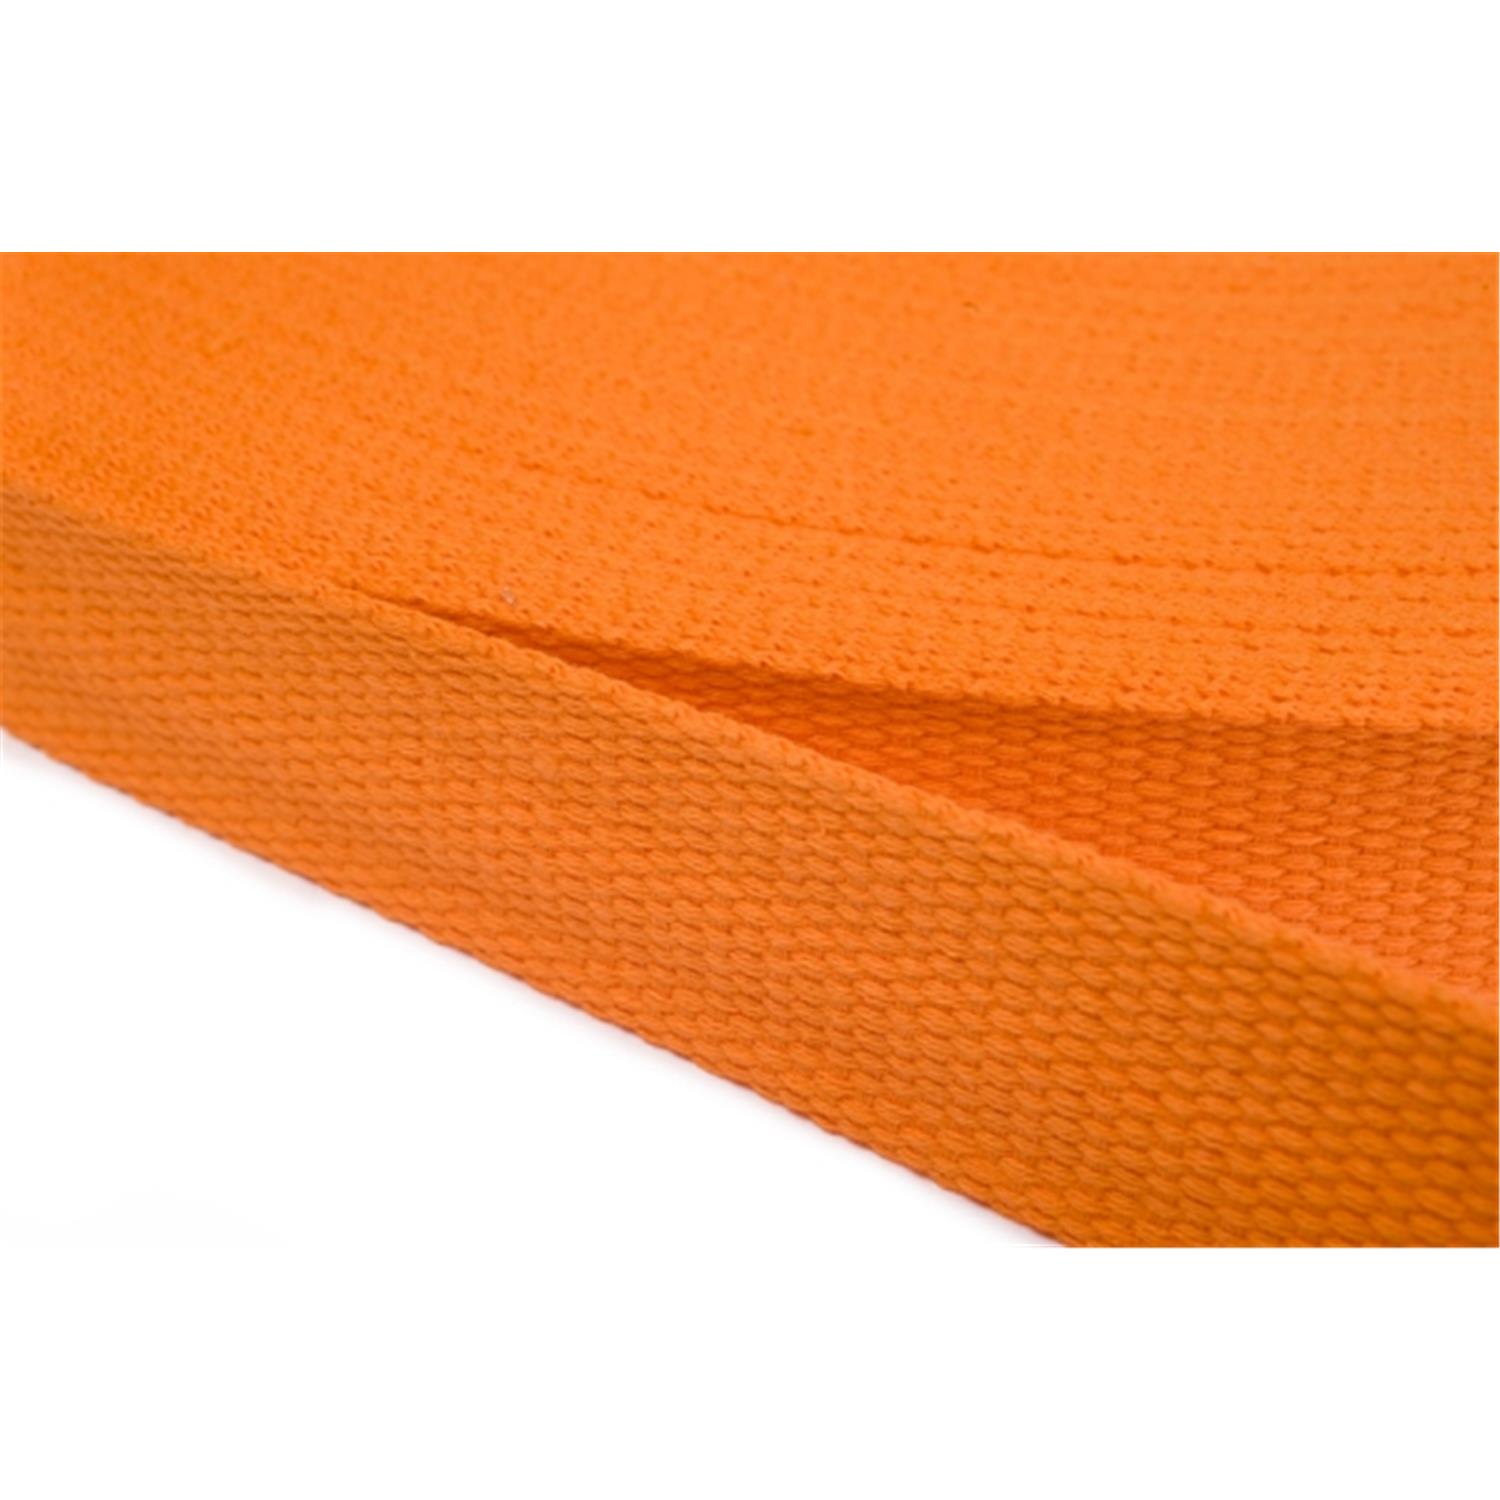 Gurtband aus Baumwolle 40mm in 20 Farben 06 - orange 12 Meter